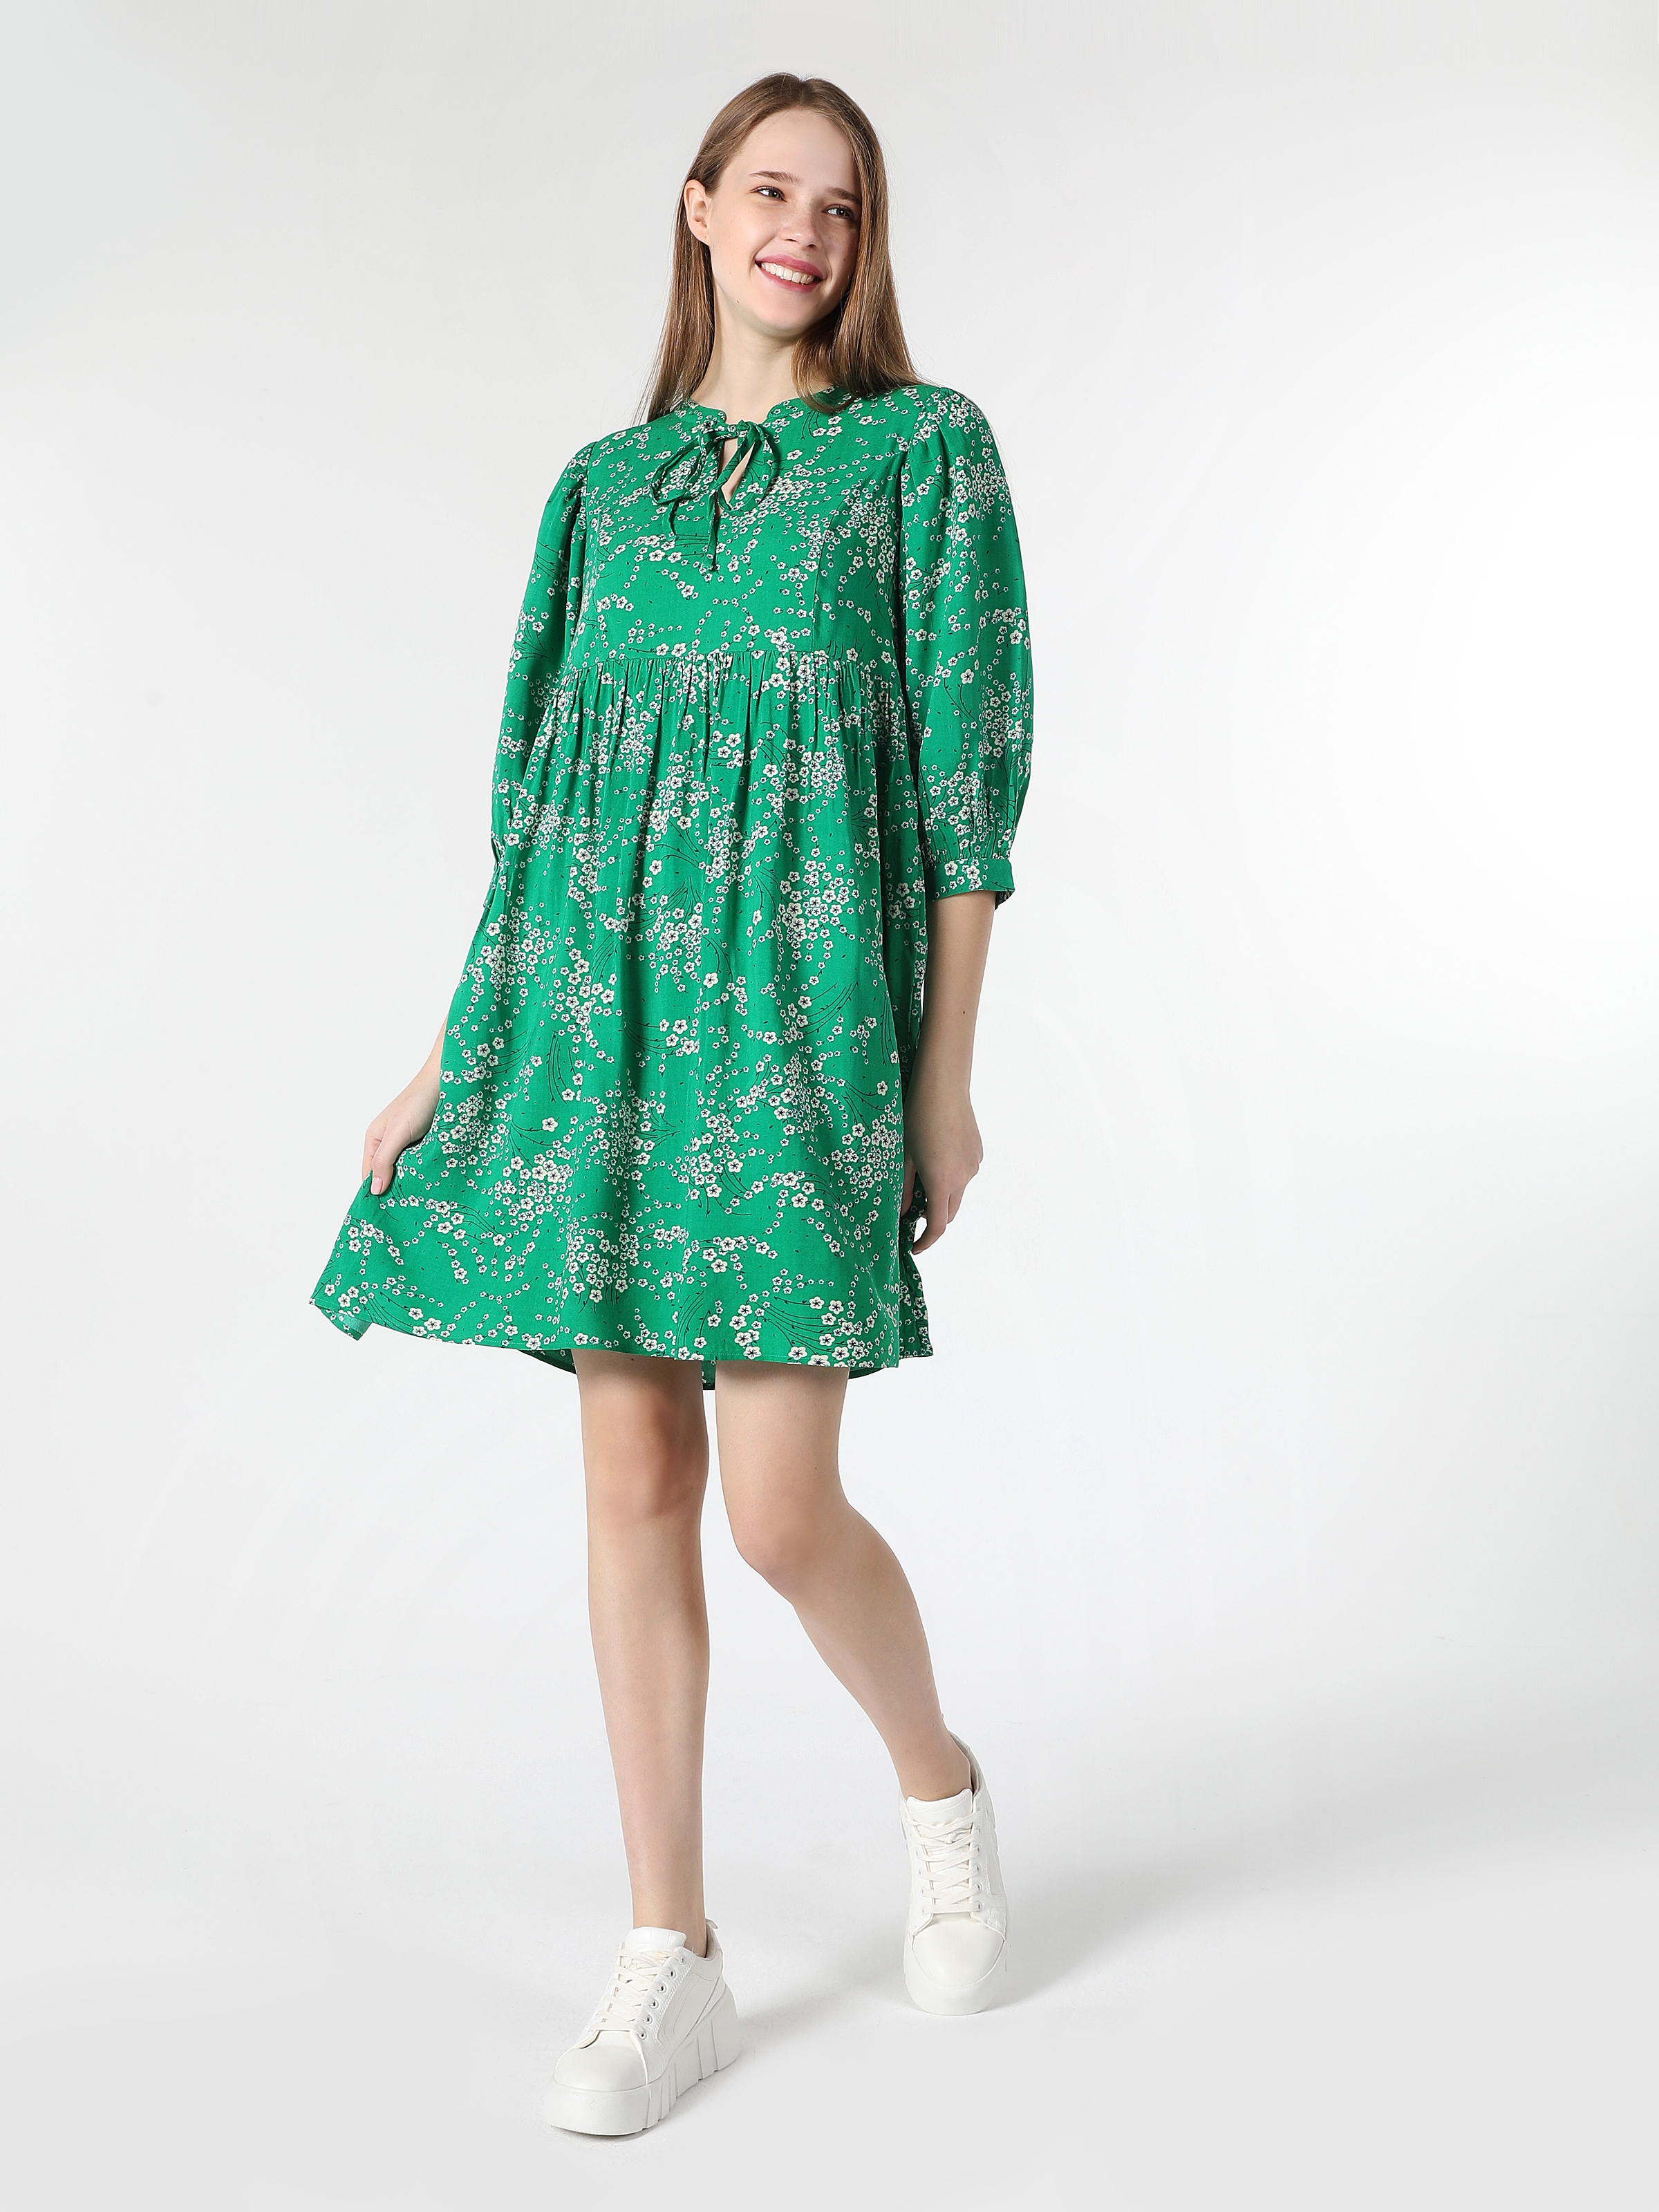 Afficher les détails de Robe Femme Verte À İmprimé Floral Coupe Régulière